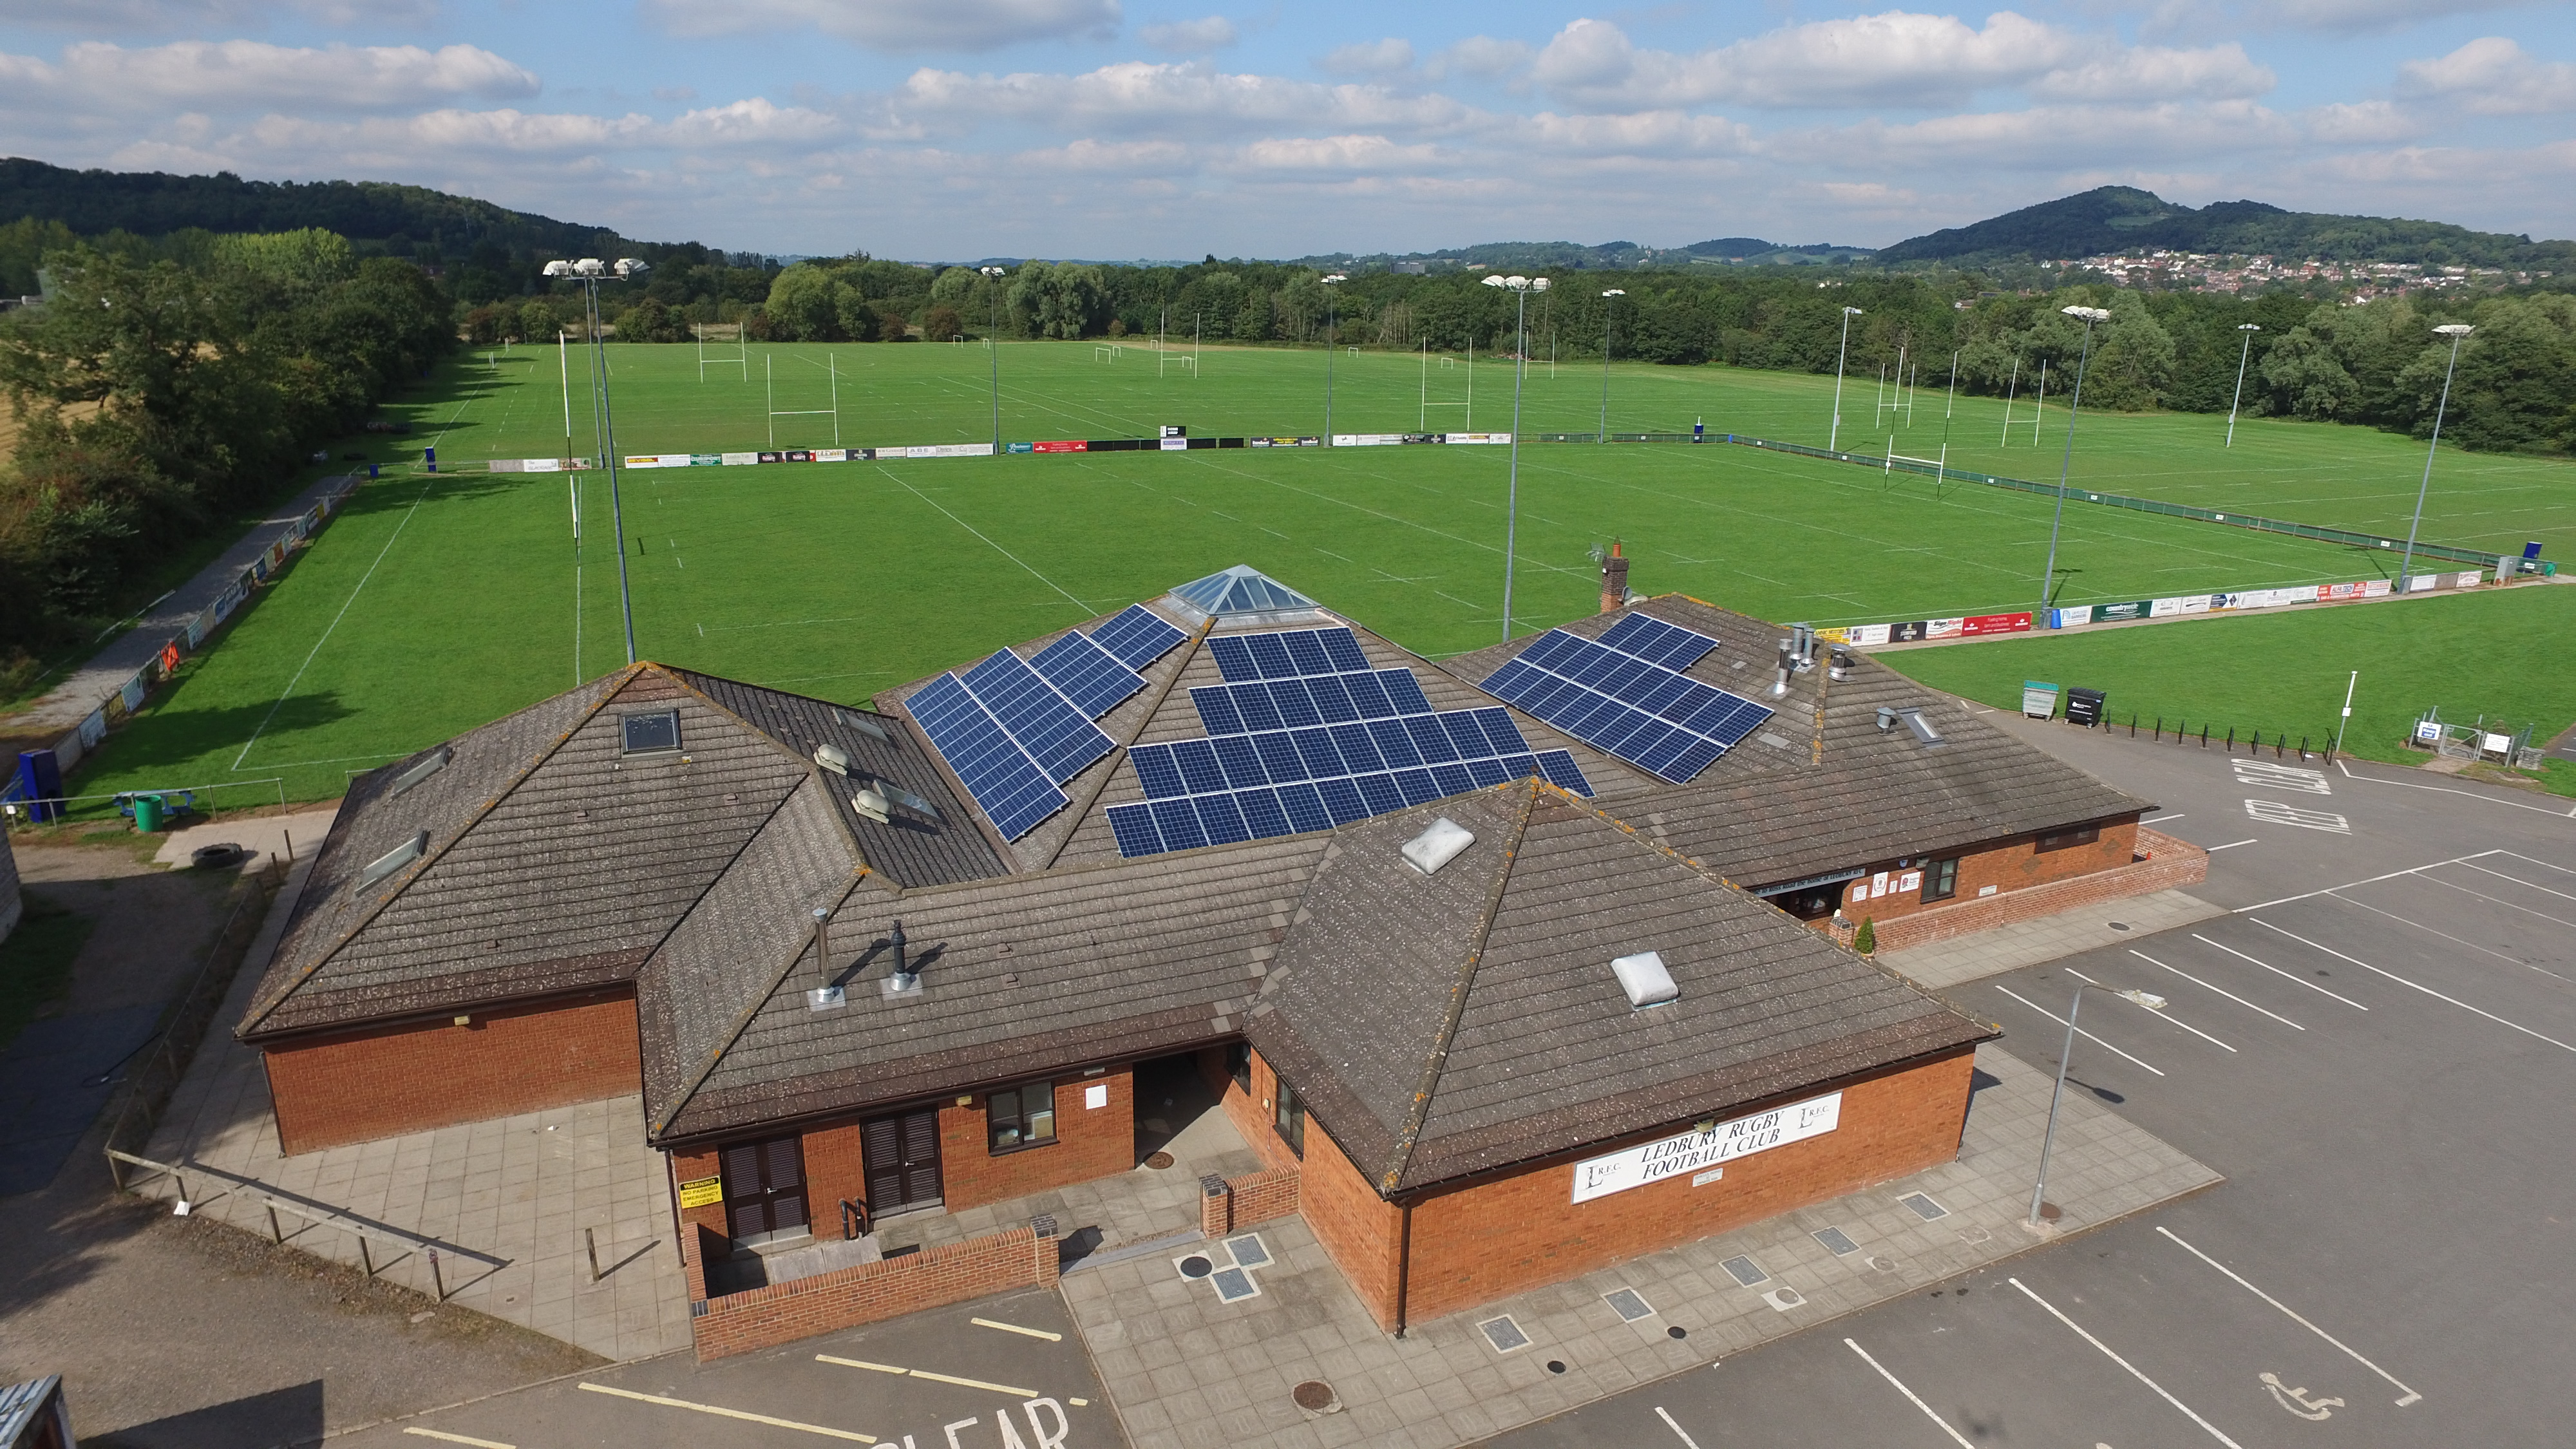 An aerial shot of Ledbury Rugby Football Club